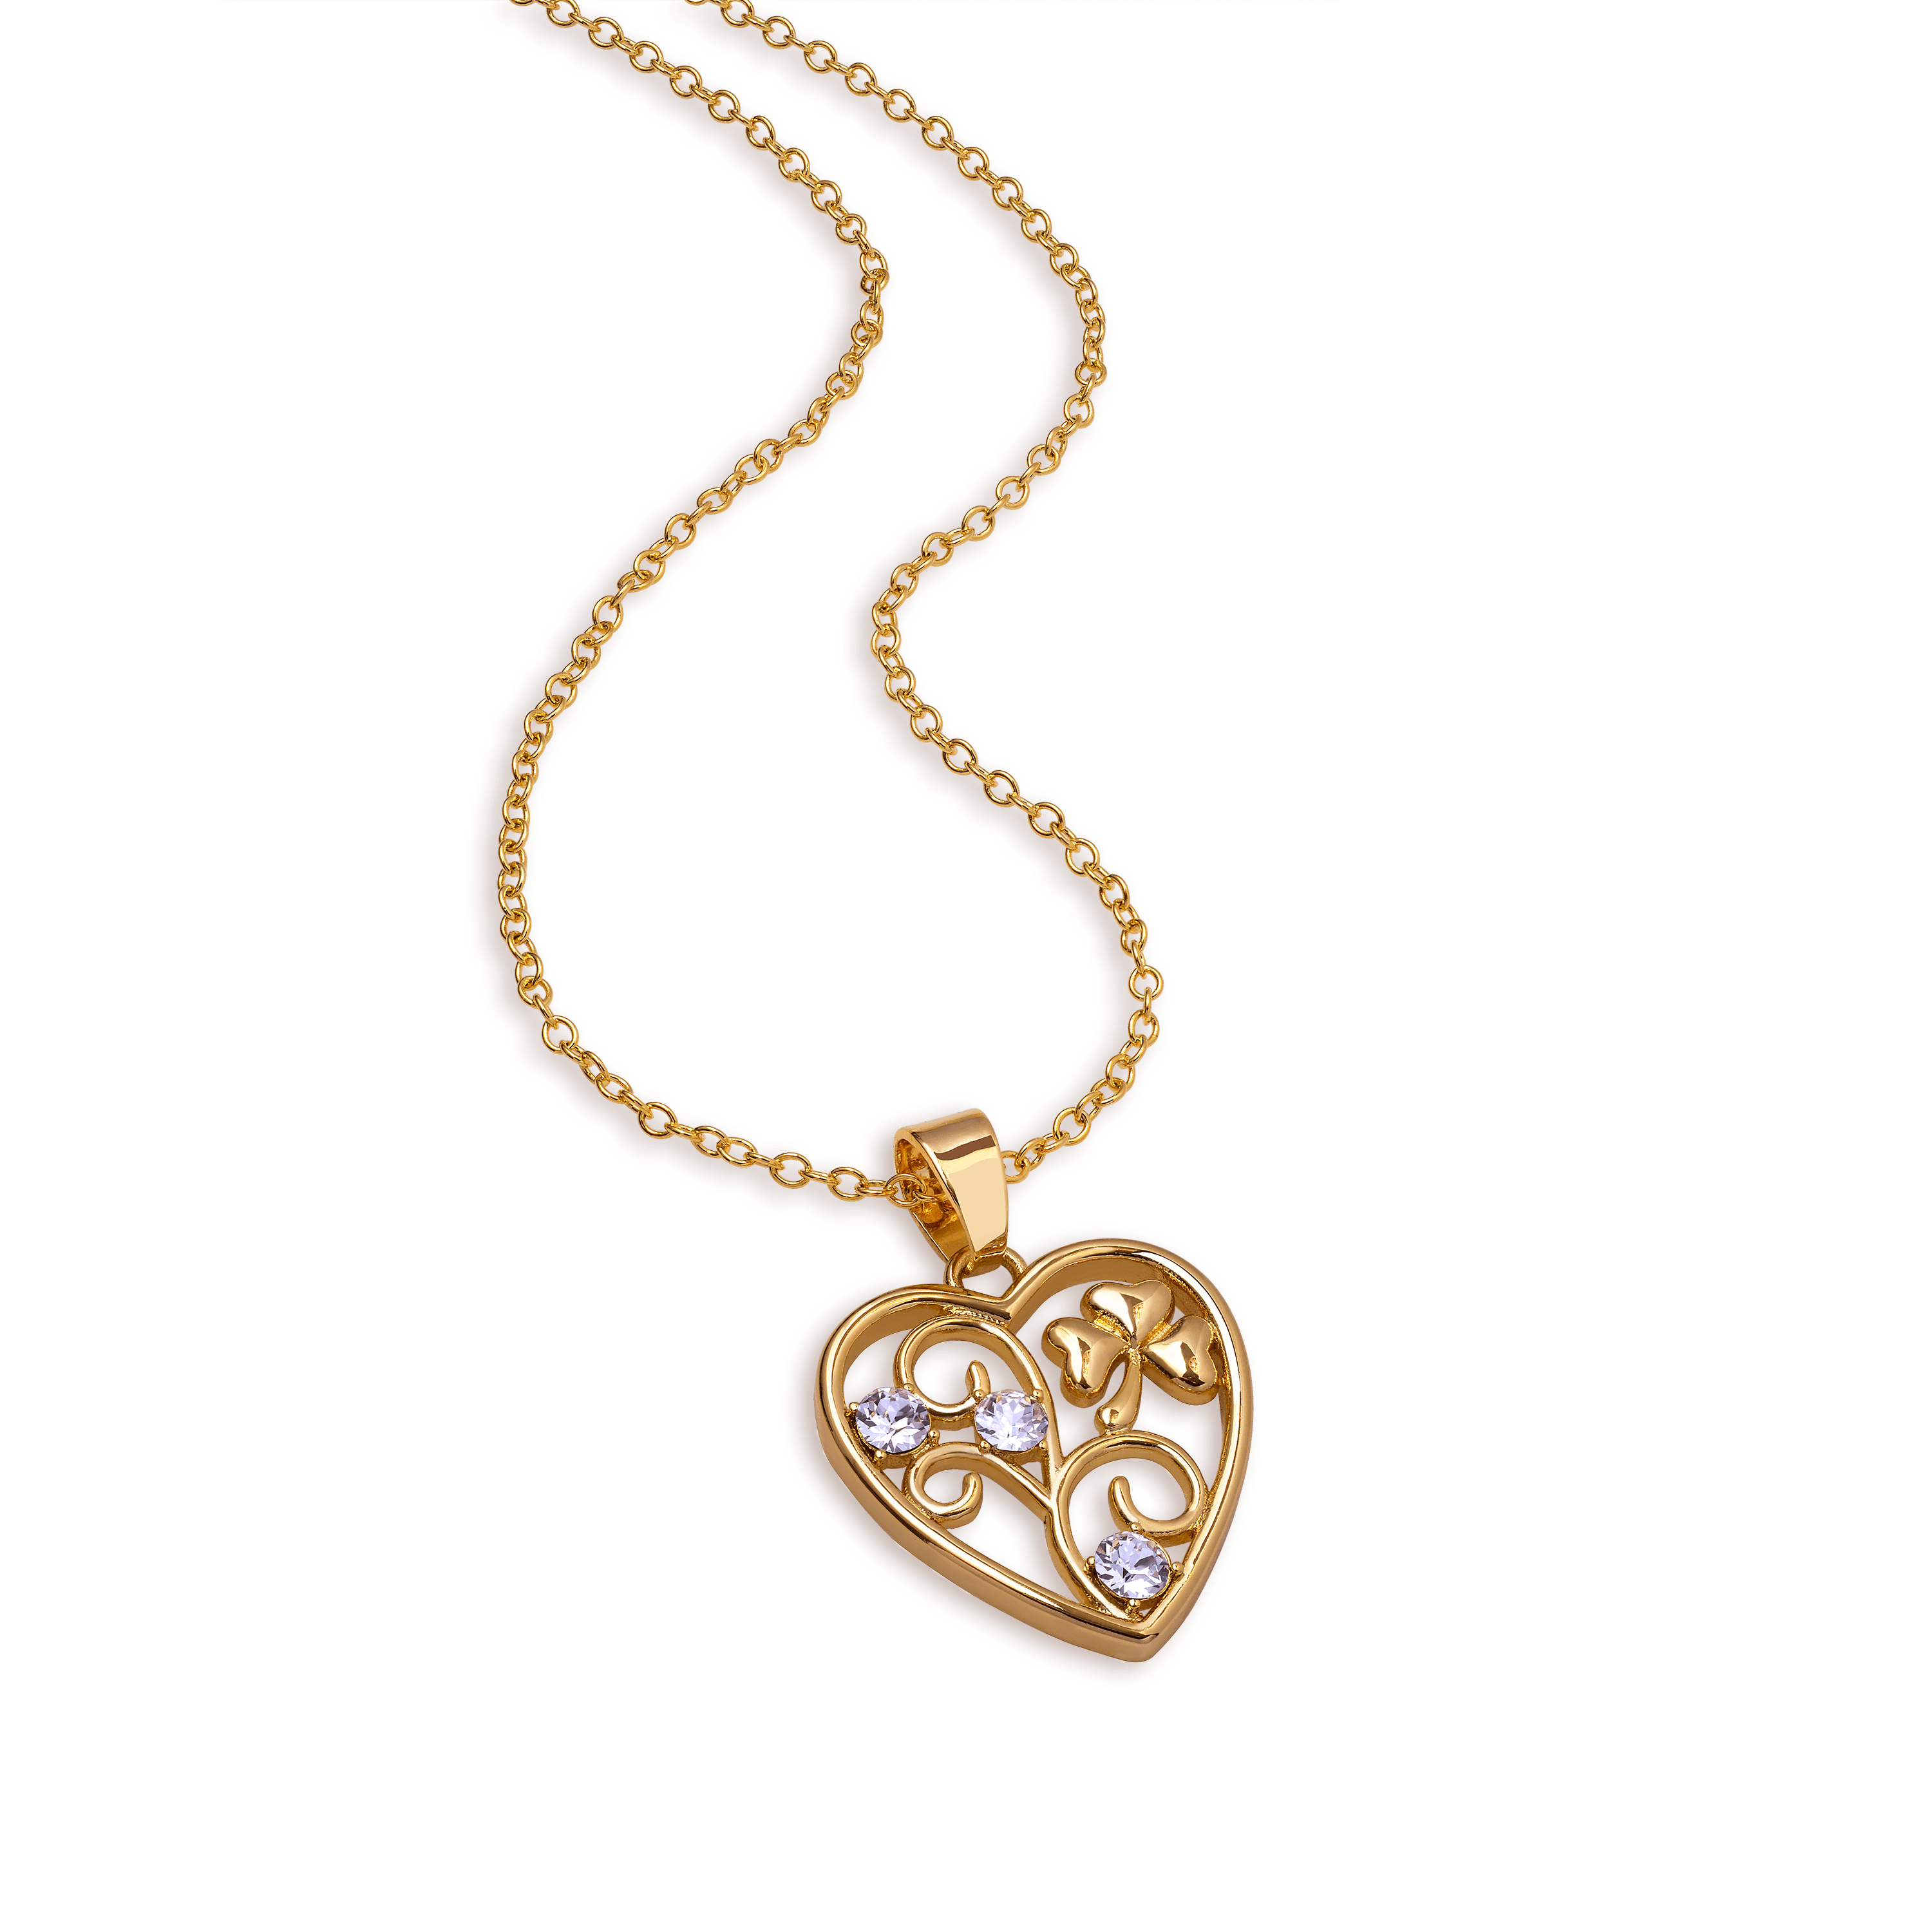 Bliv en af vores heldige, som får fingrene i denne smukke og forgyldte halskæde med tre Swarovski-krystaller som fremhæver en flot firkløver. Denne smukke halskæde er forgyldt med 18 karat guld som leveres i smuk indpakning.